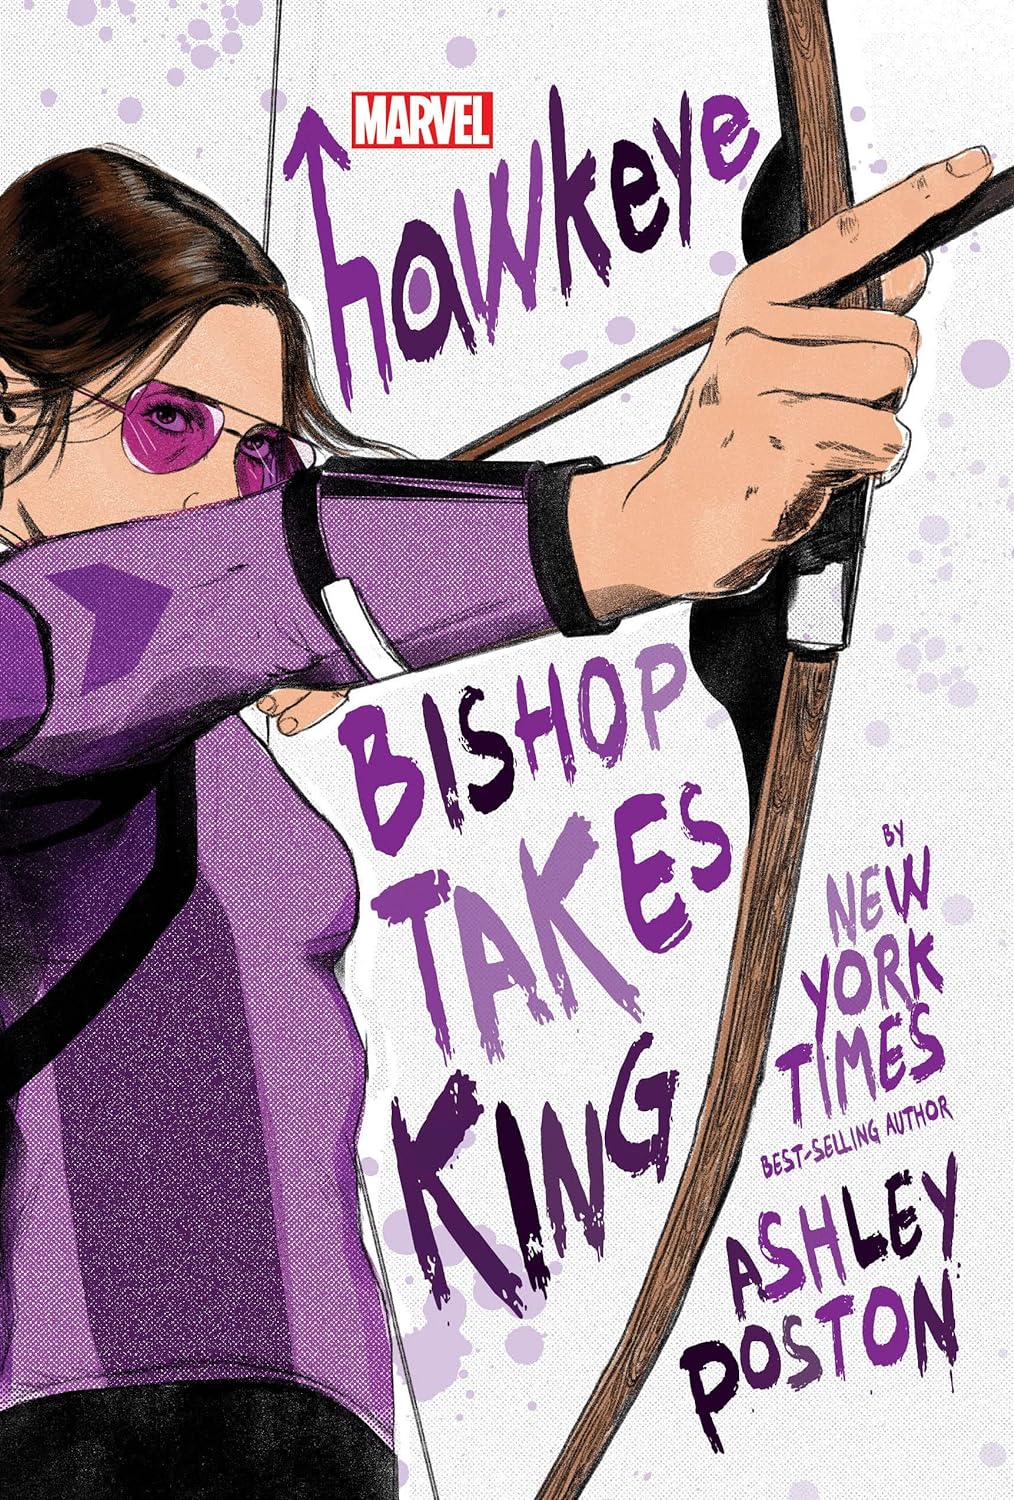 Hawkeye: Bishop Takes King Hardcover